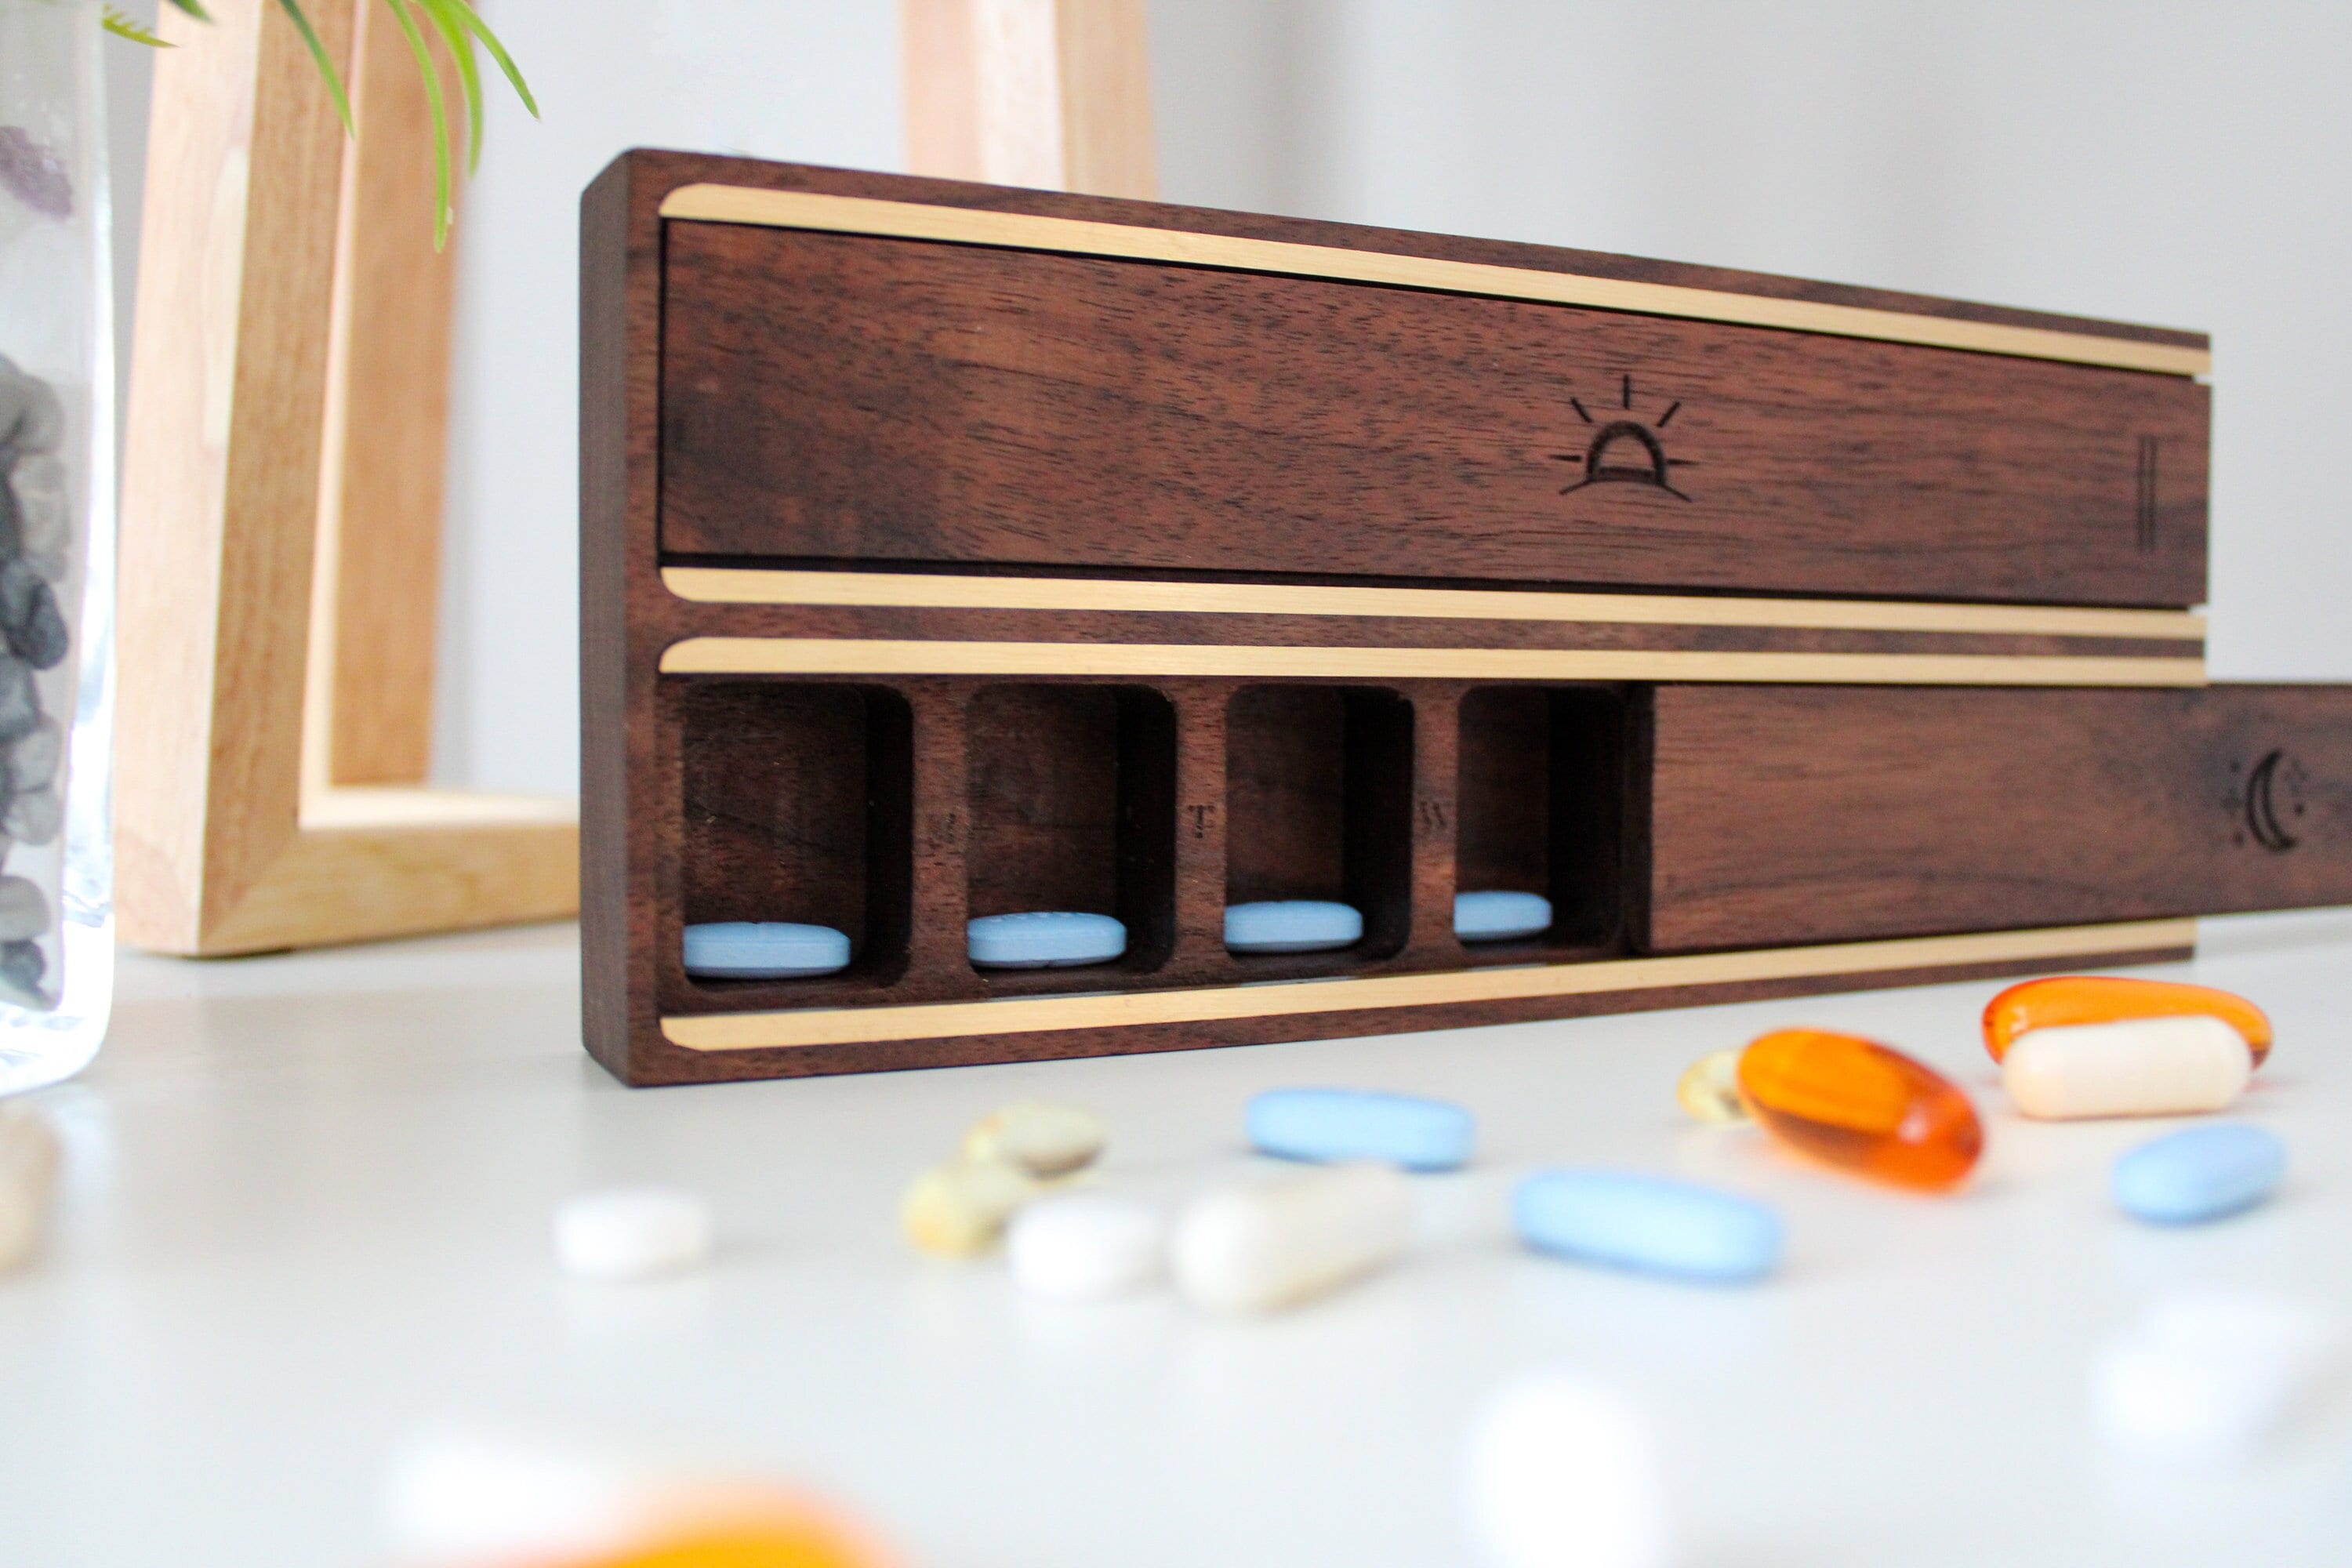 Étui à pilules étanche - Organisateur de pilules de voyage Petite boîte à  pilules avec compartiments amovibles - Porte-pilules extérieur portable